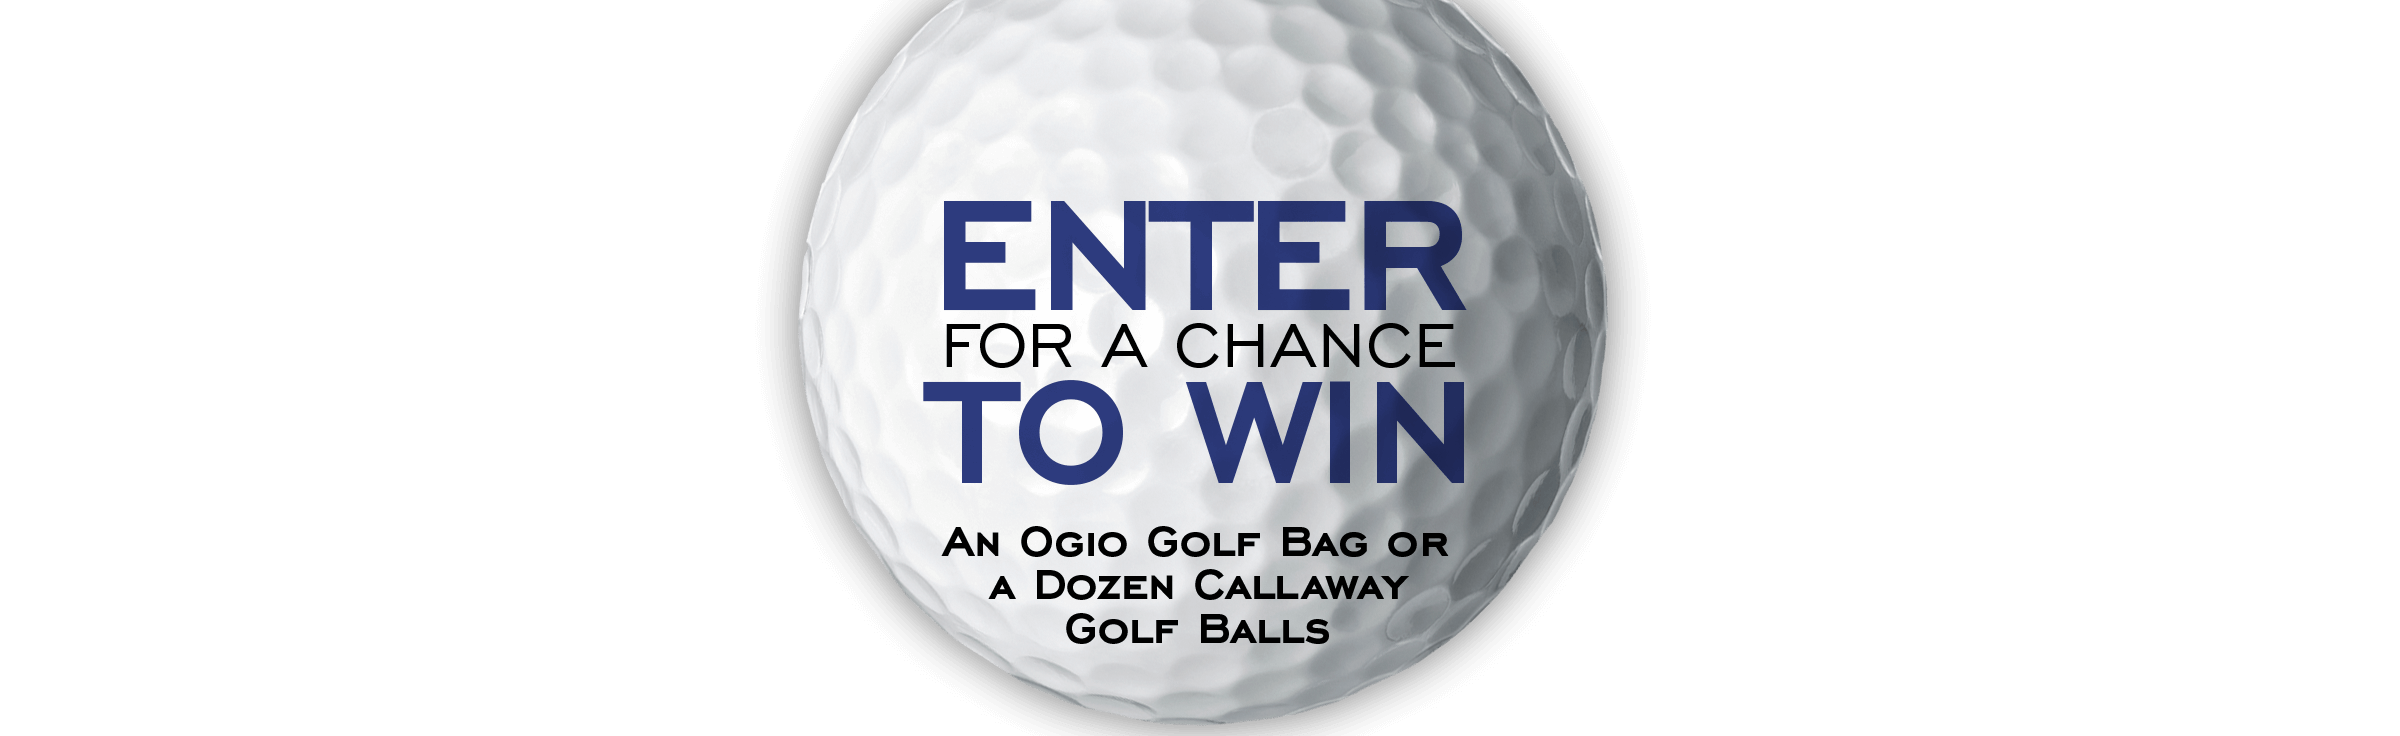 ENTER FOR A CHANCE TO WIN An Ogio Golf Bag or a Dozen Callaway Golf Balls